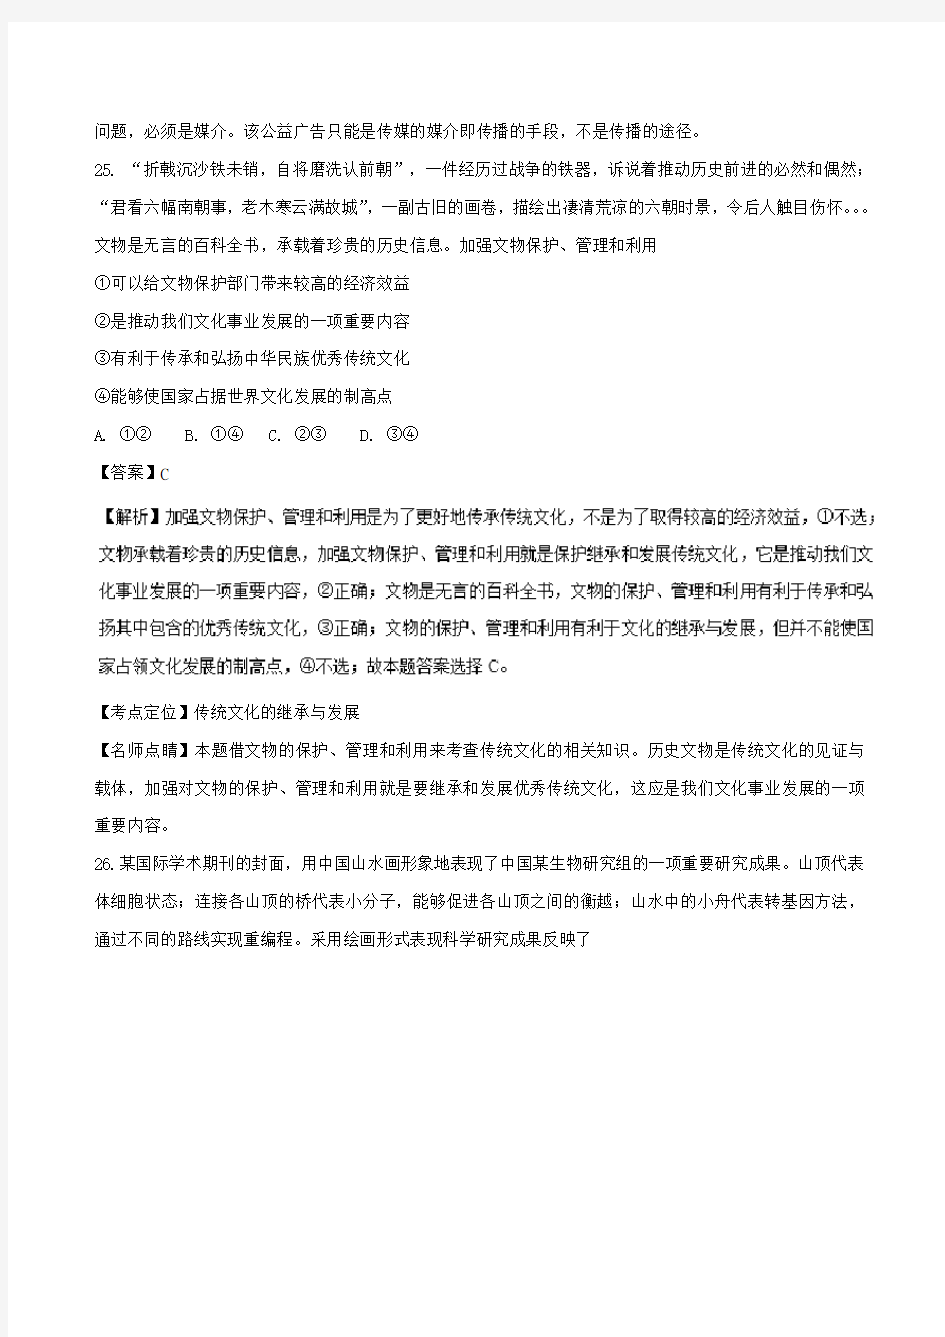 2016年高考试题(政治)北京卷 解析